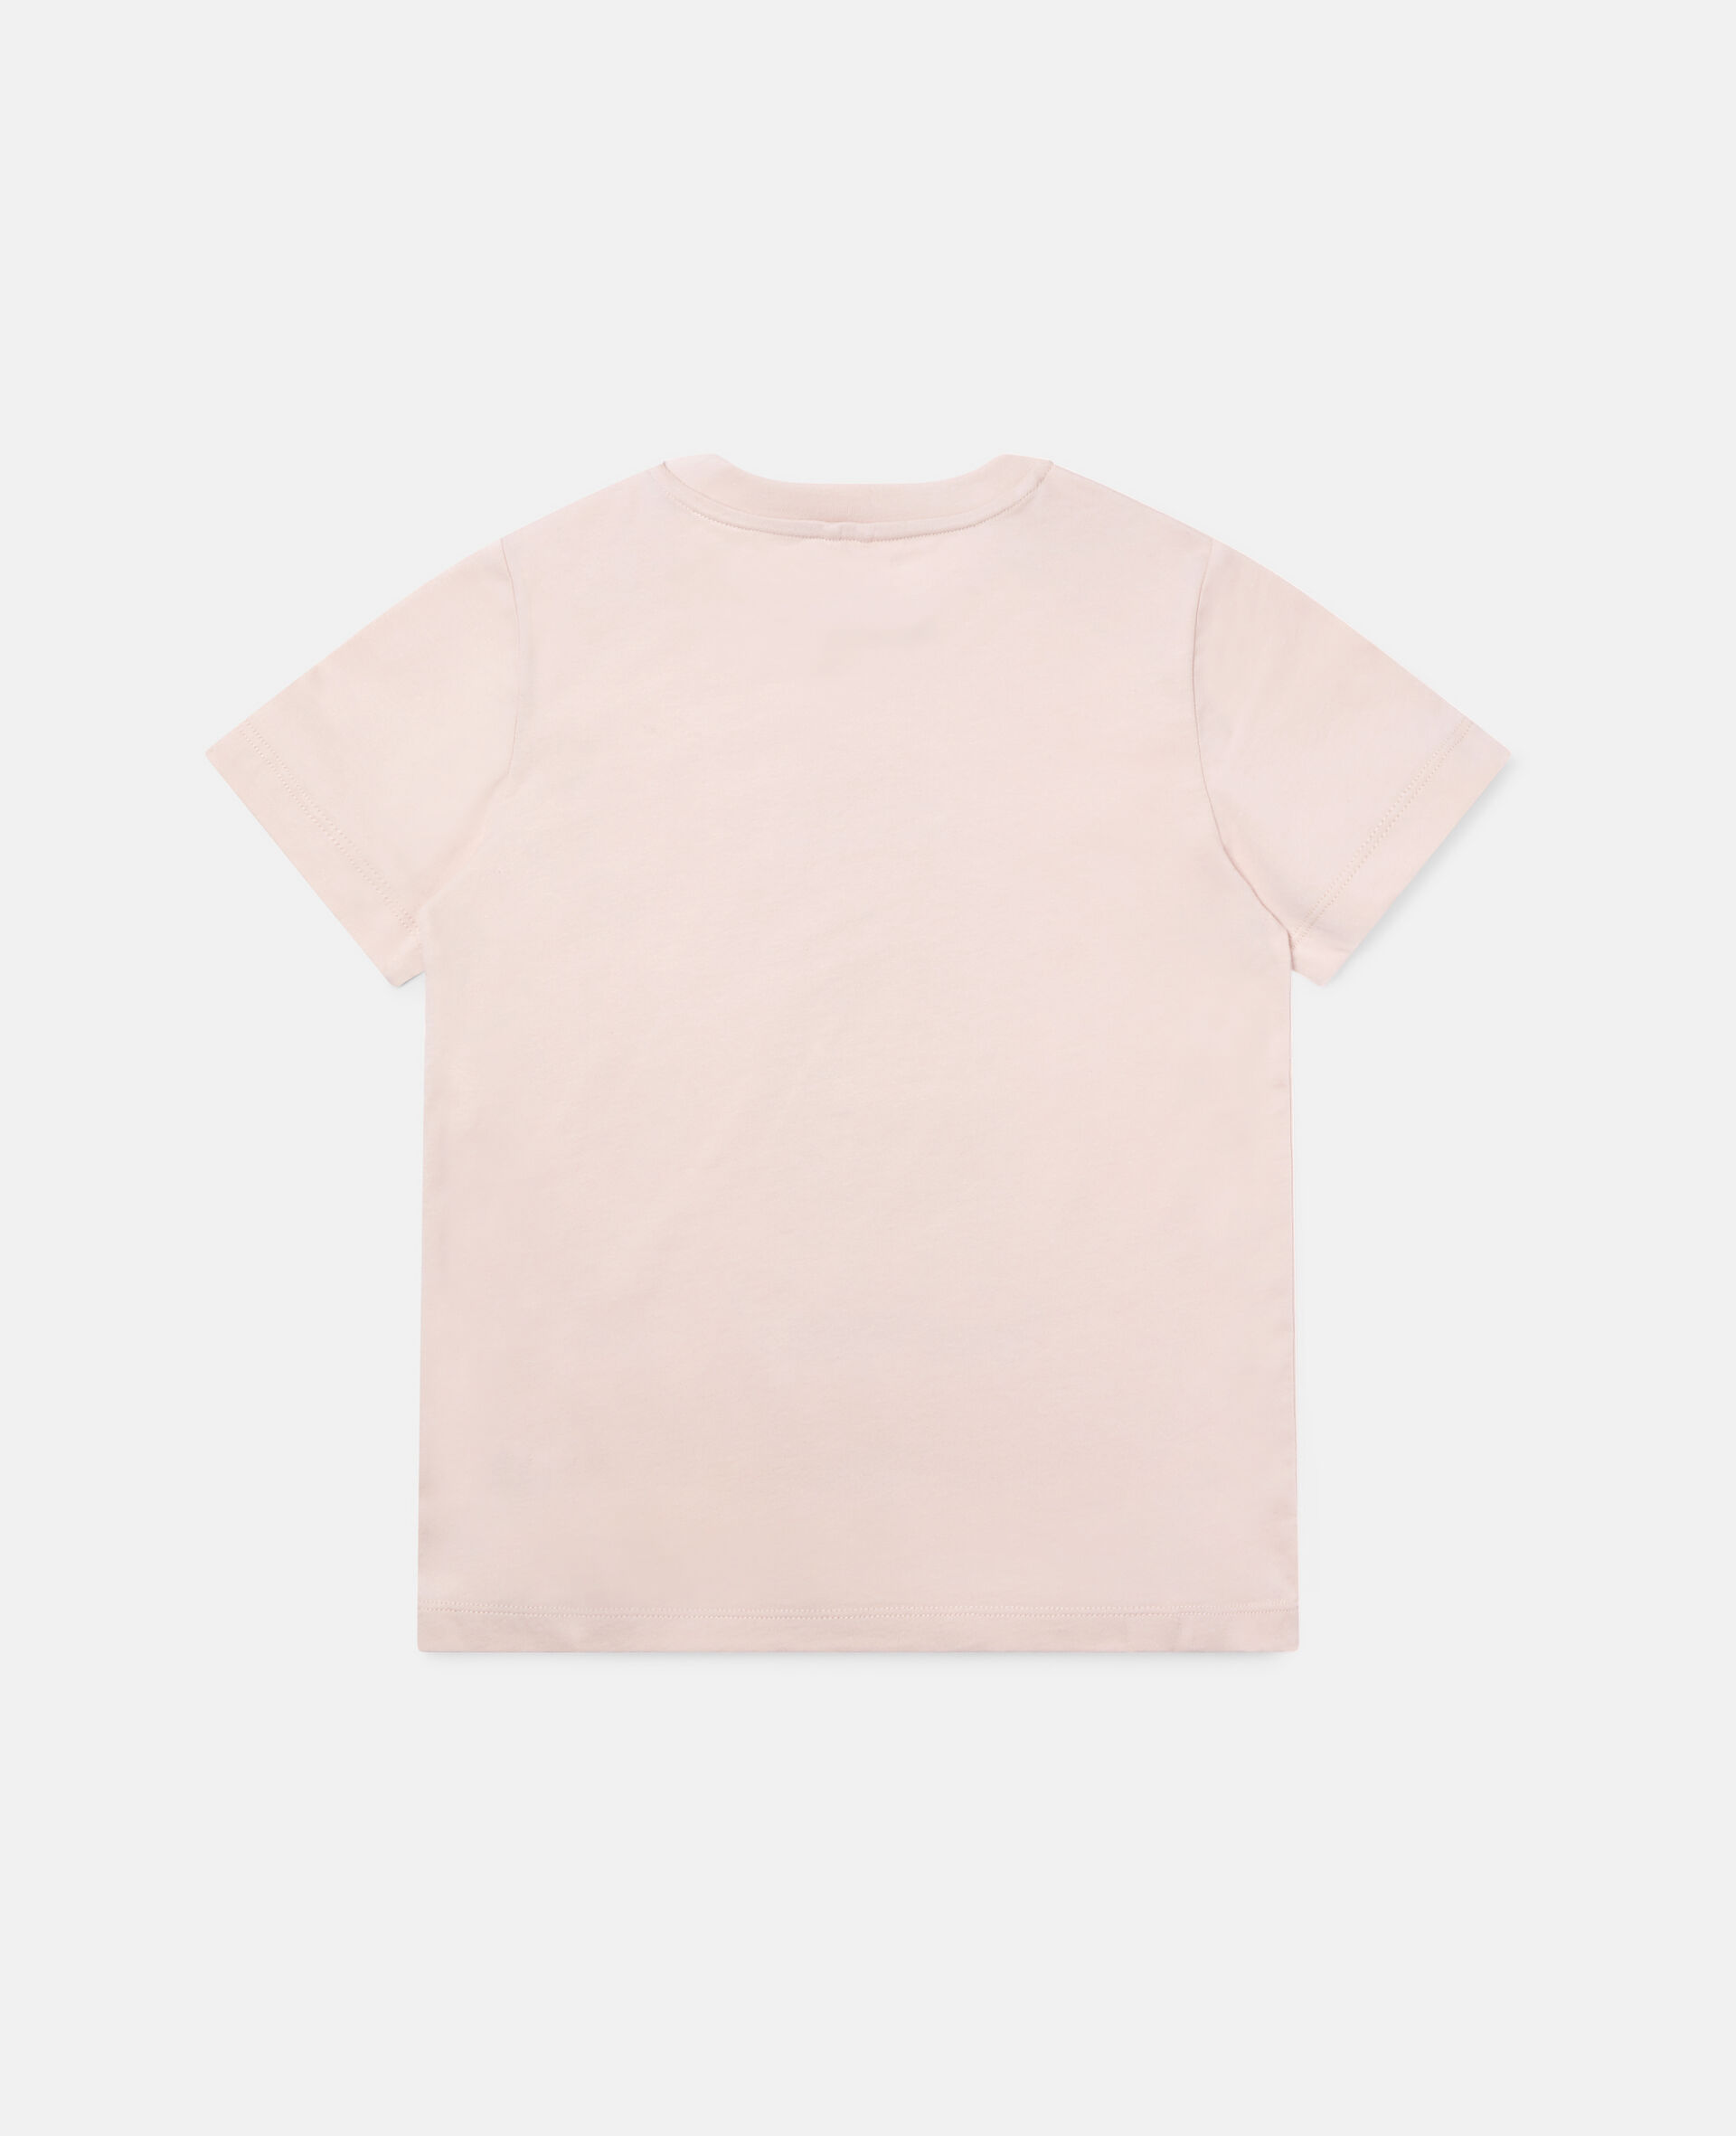 Skating Poodle Cotton T-shirt-Pink-large image number 3